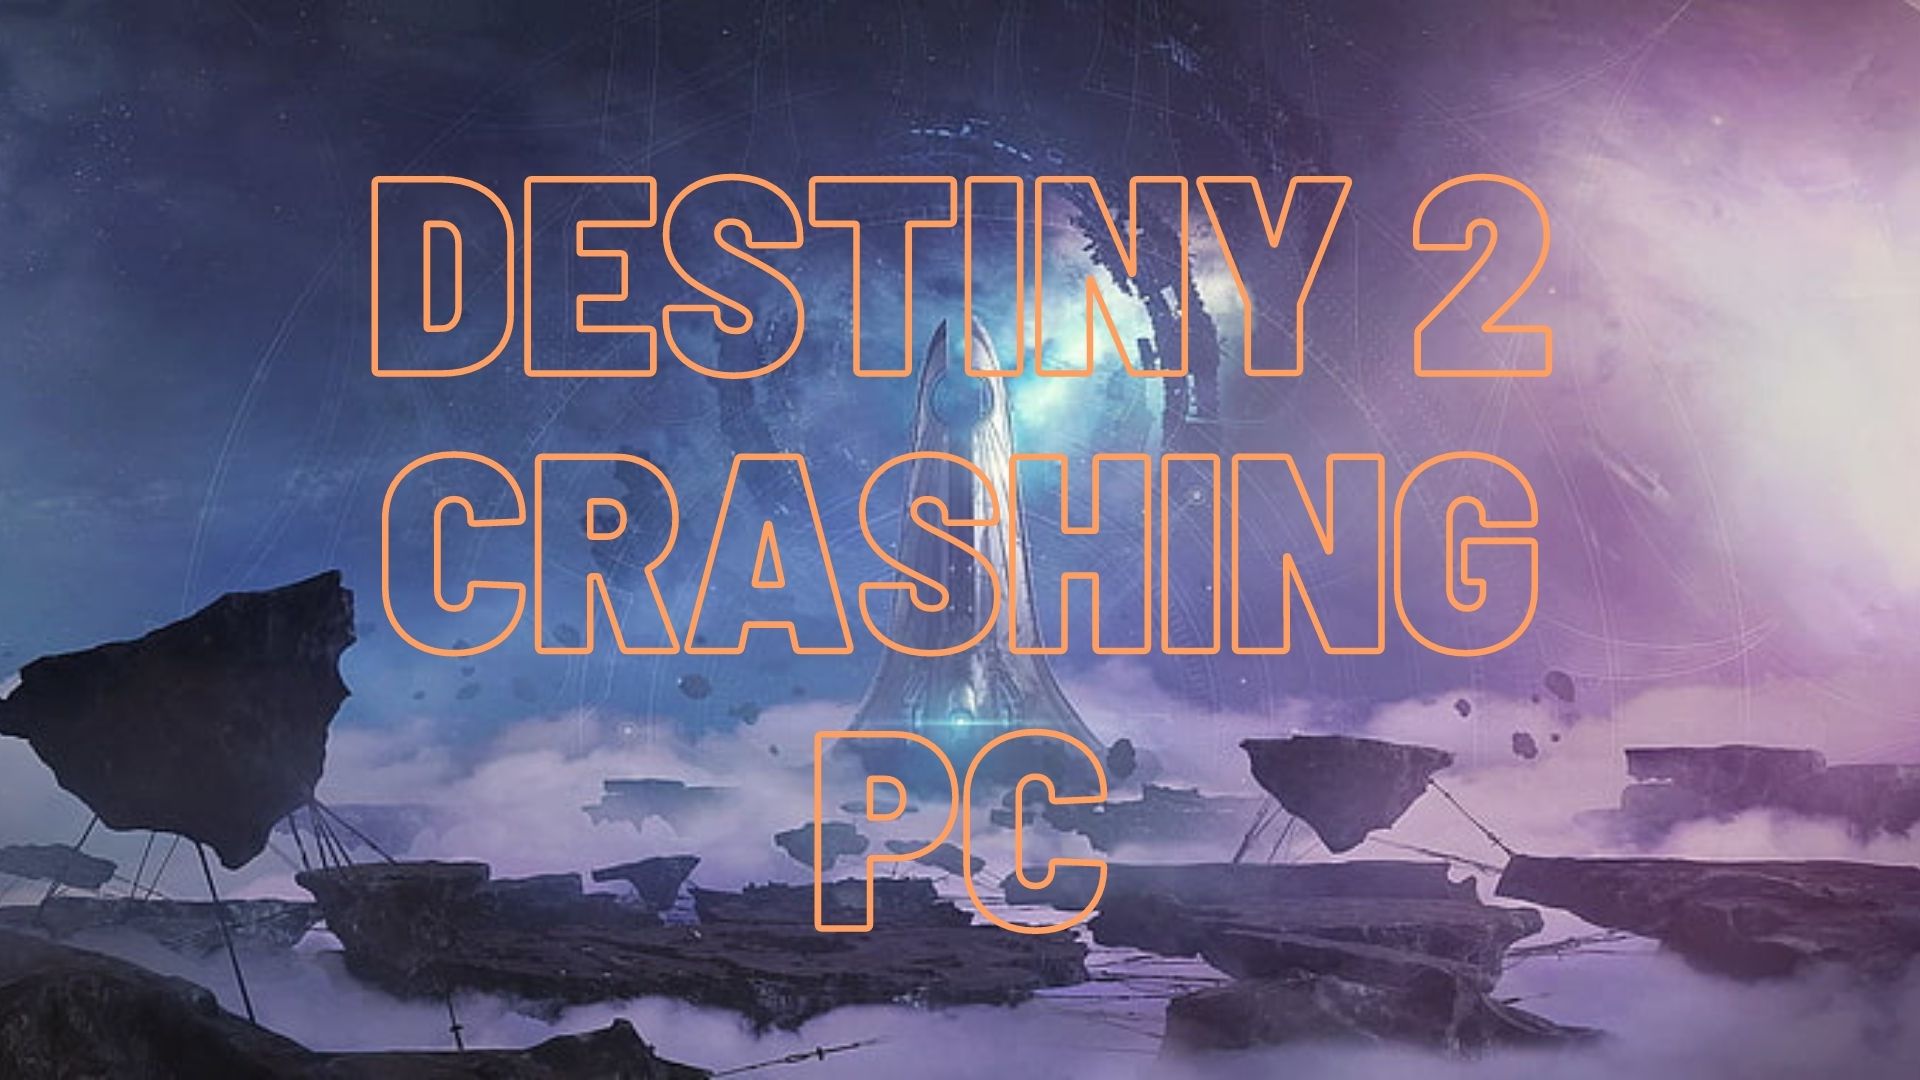 Destiny 2 Crashing On PC [FIXED]